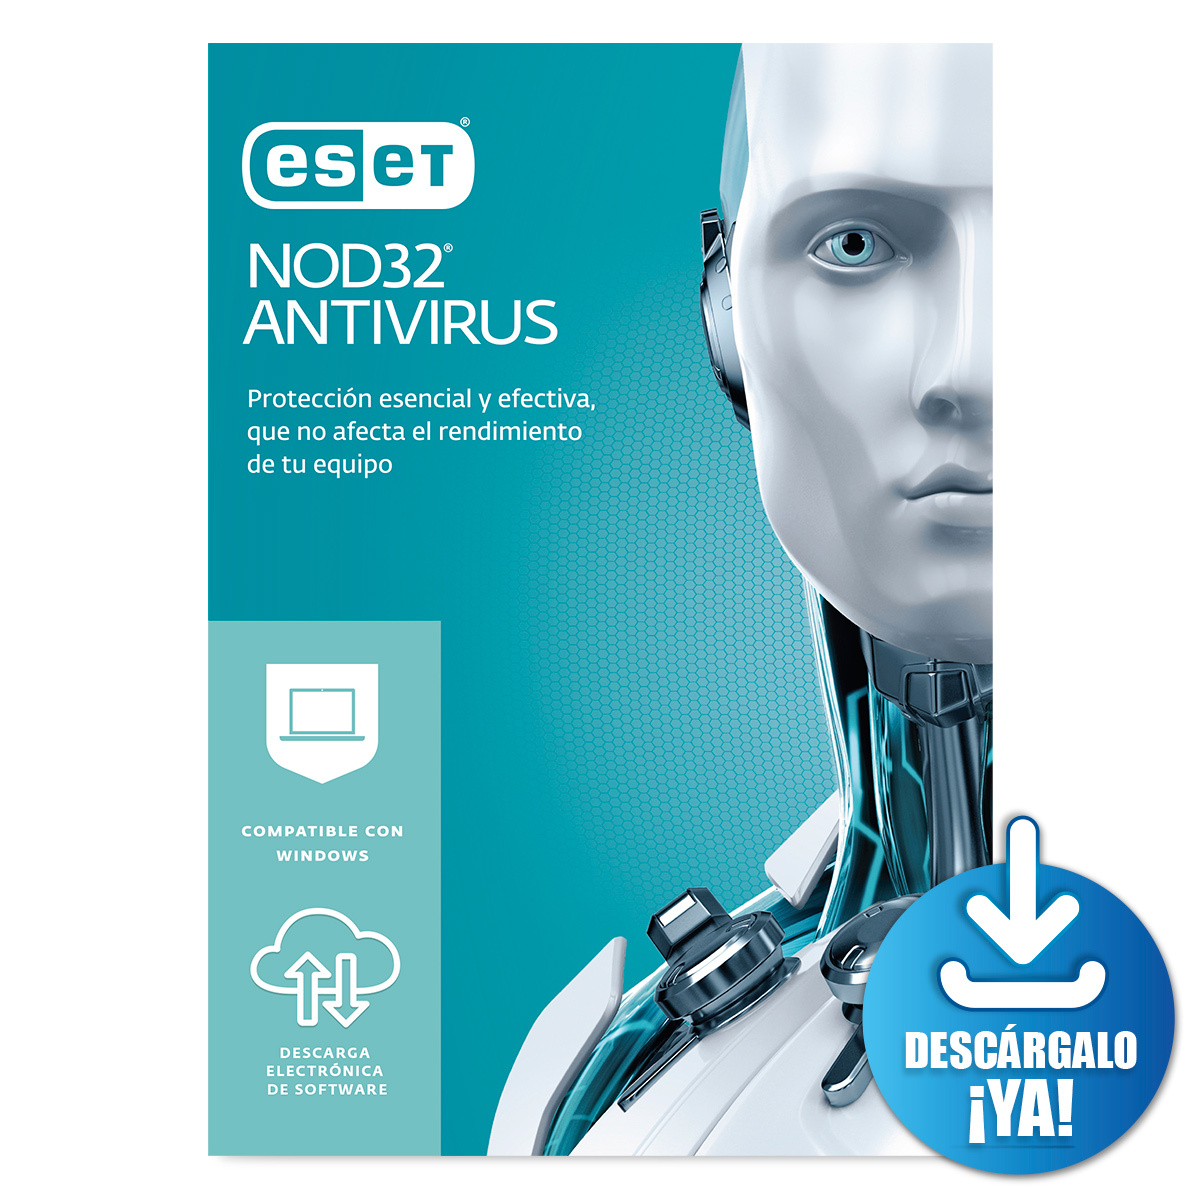 Antivirus ESET Nod32 Descargable / Licencia 2 años / 3 dispositivos / PC / Laptop